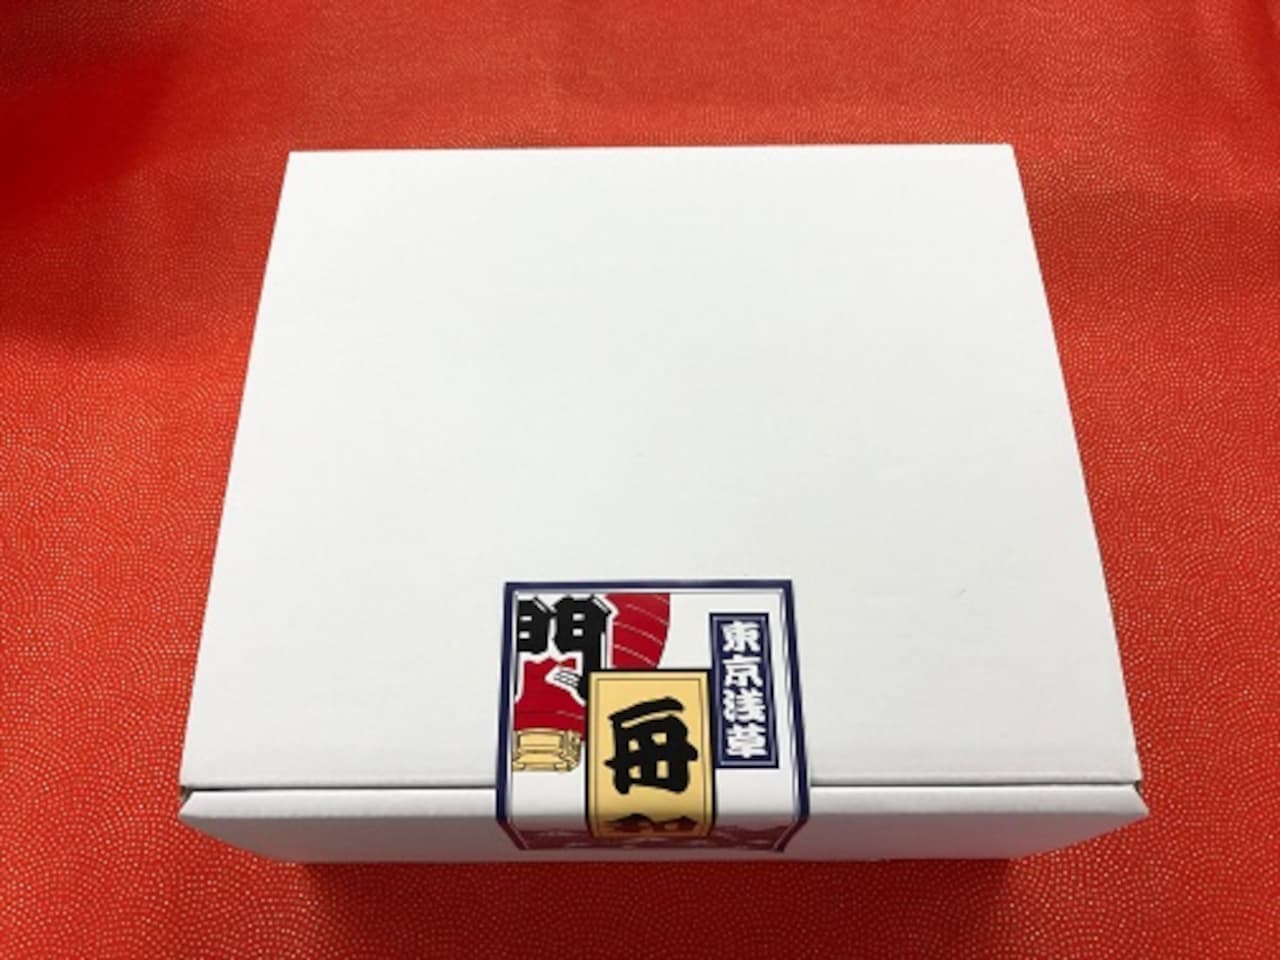 Funawa "Happy Back" "Happy Box"